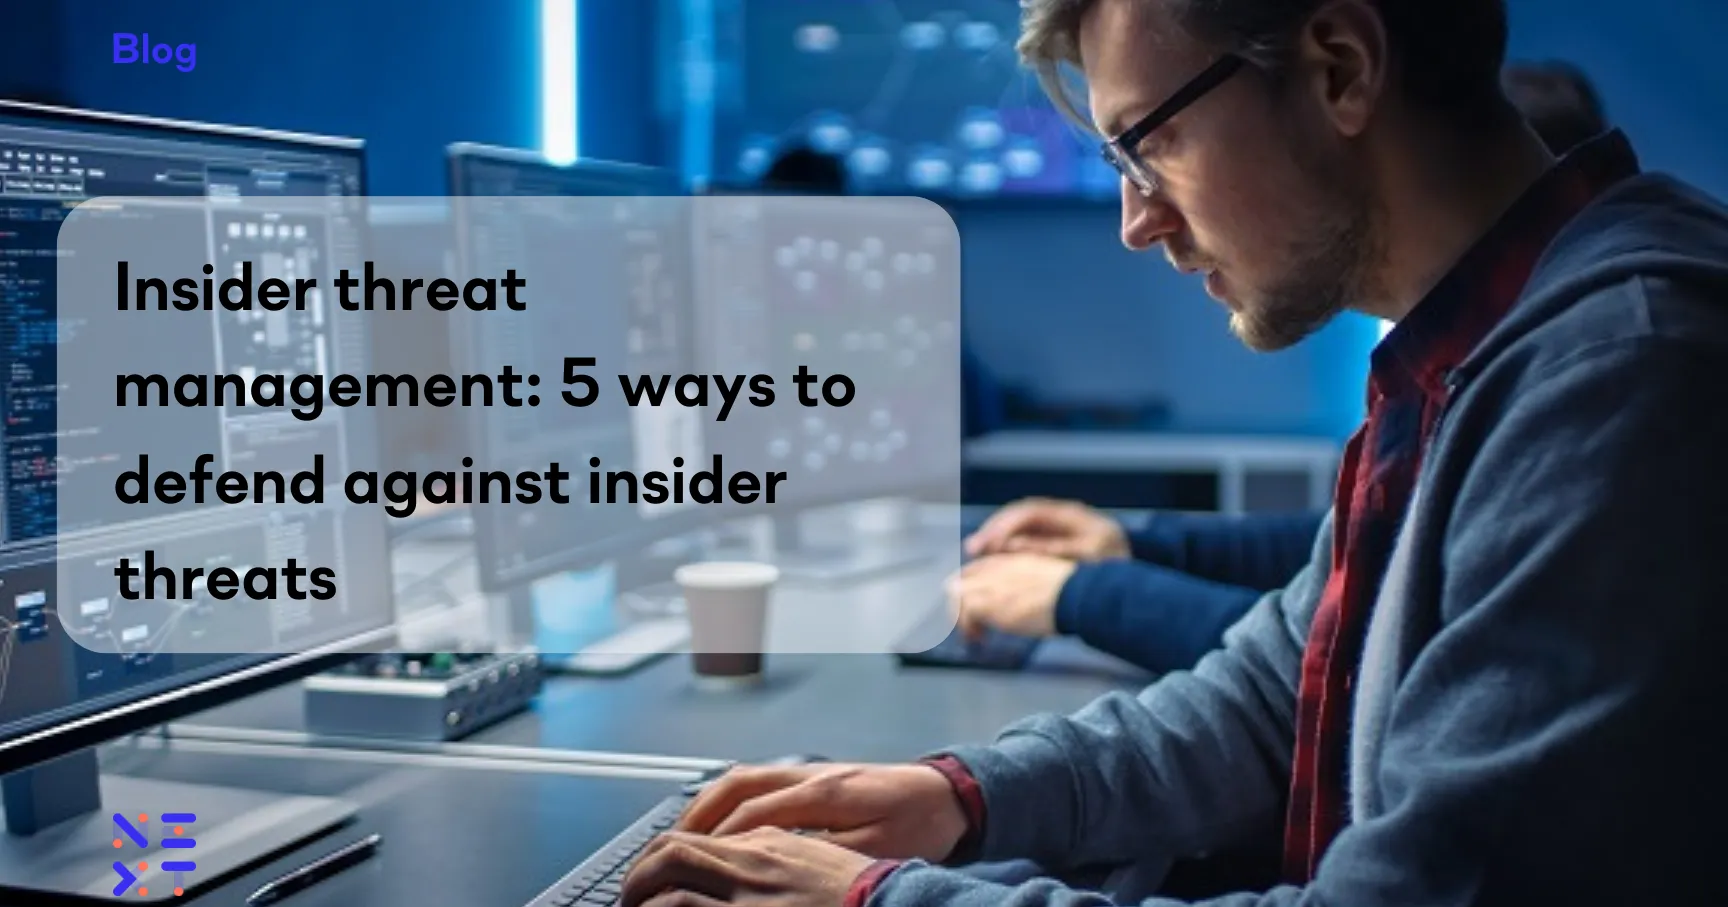 Insider threat management: 5 ways to defend against insider threats